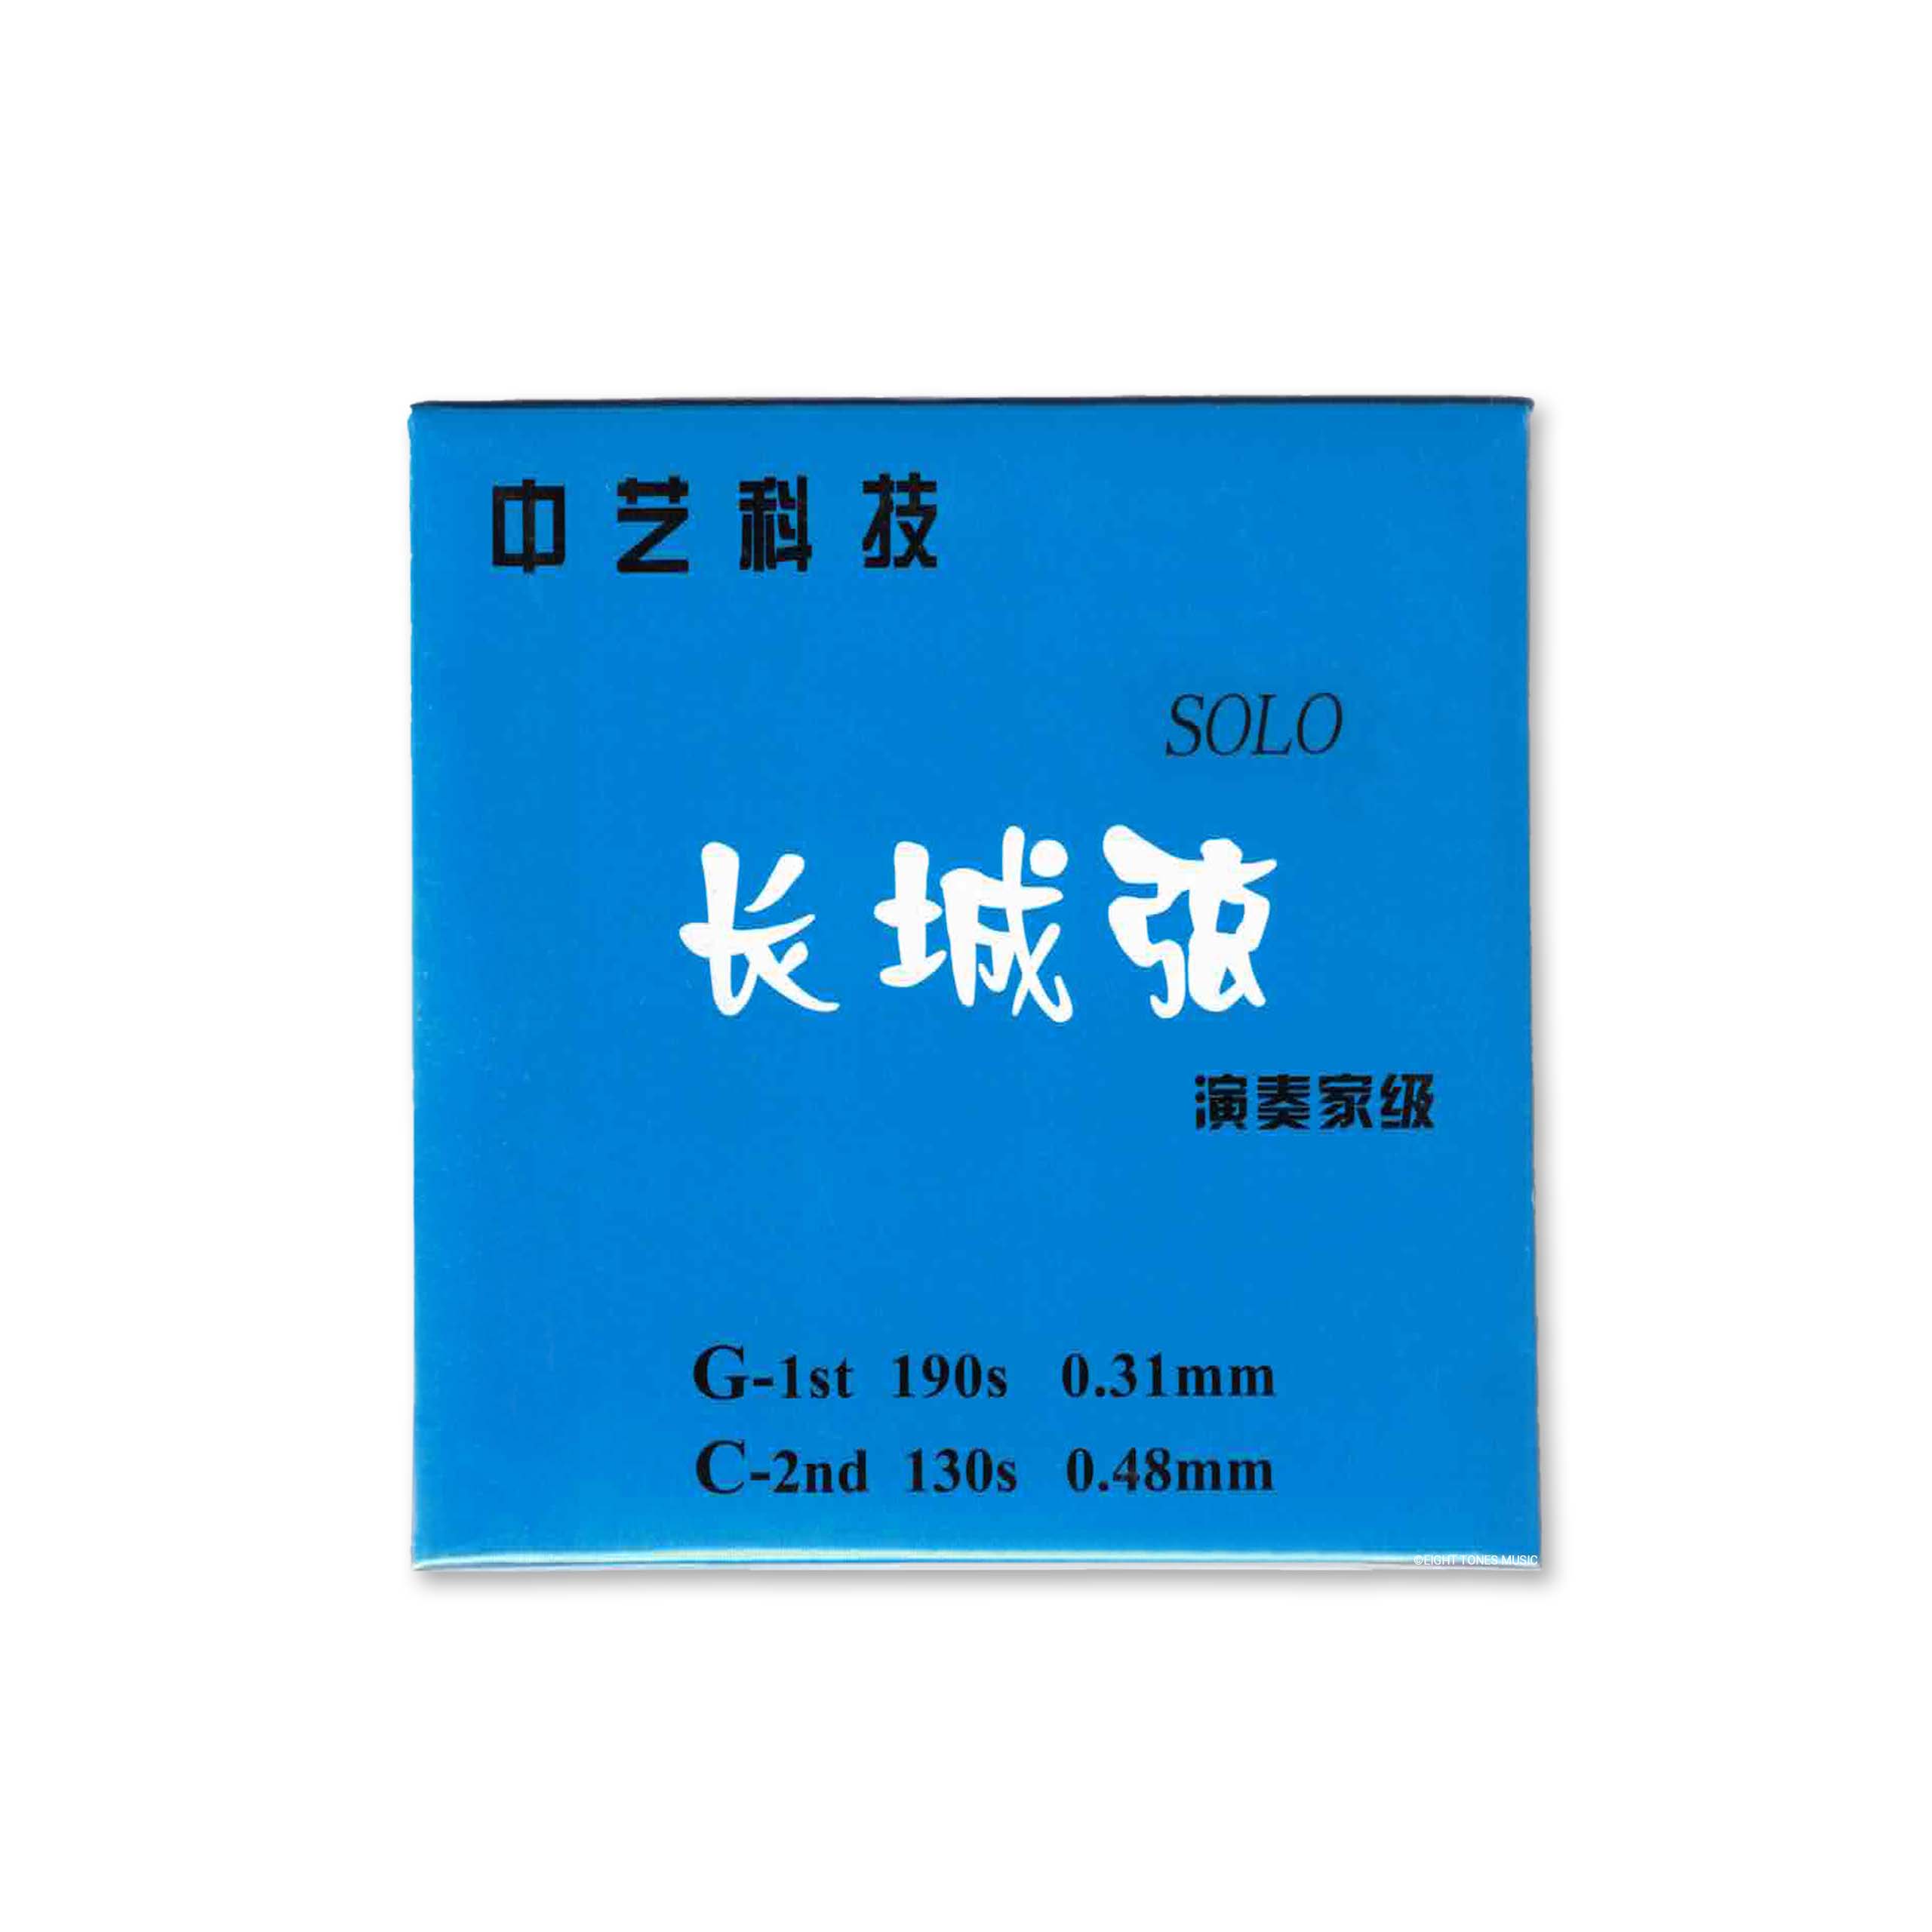 Zhongyi Keji Blue Solo Chang Cheng Erhu Strings (Set) front